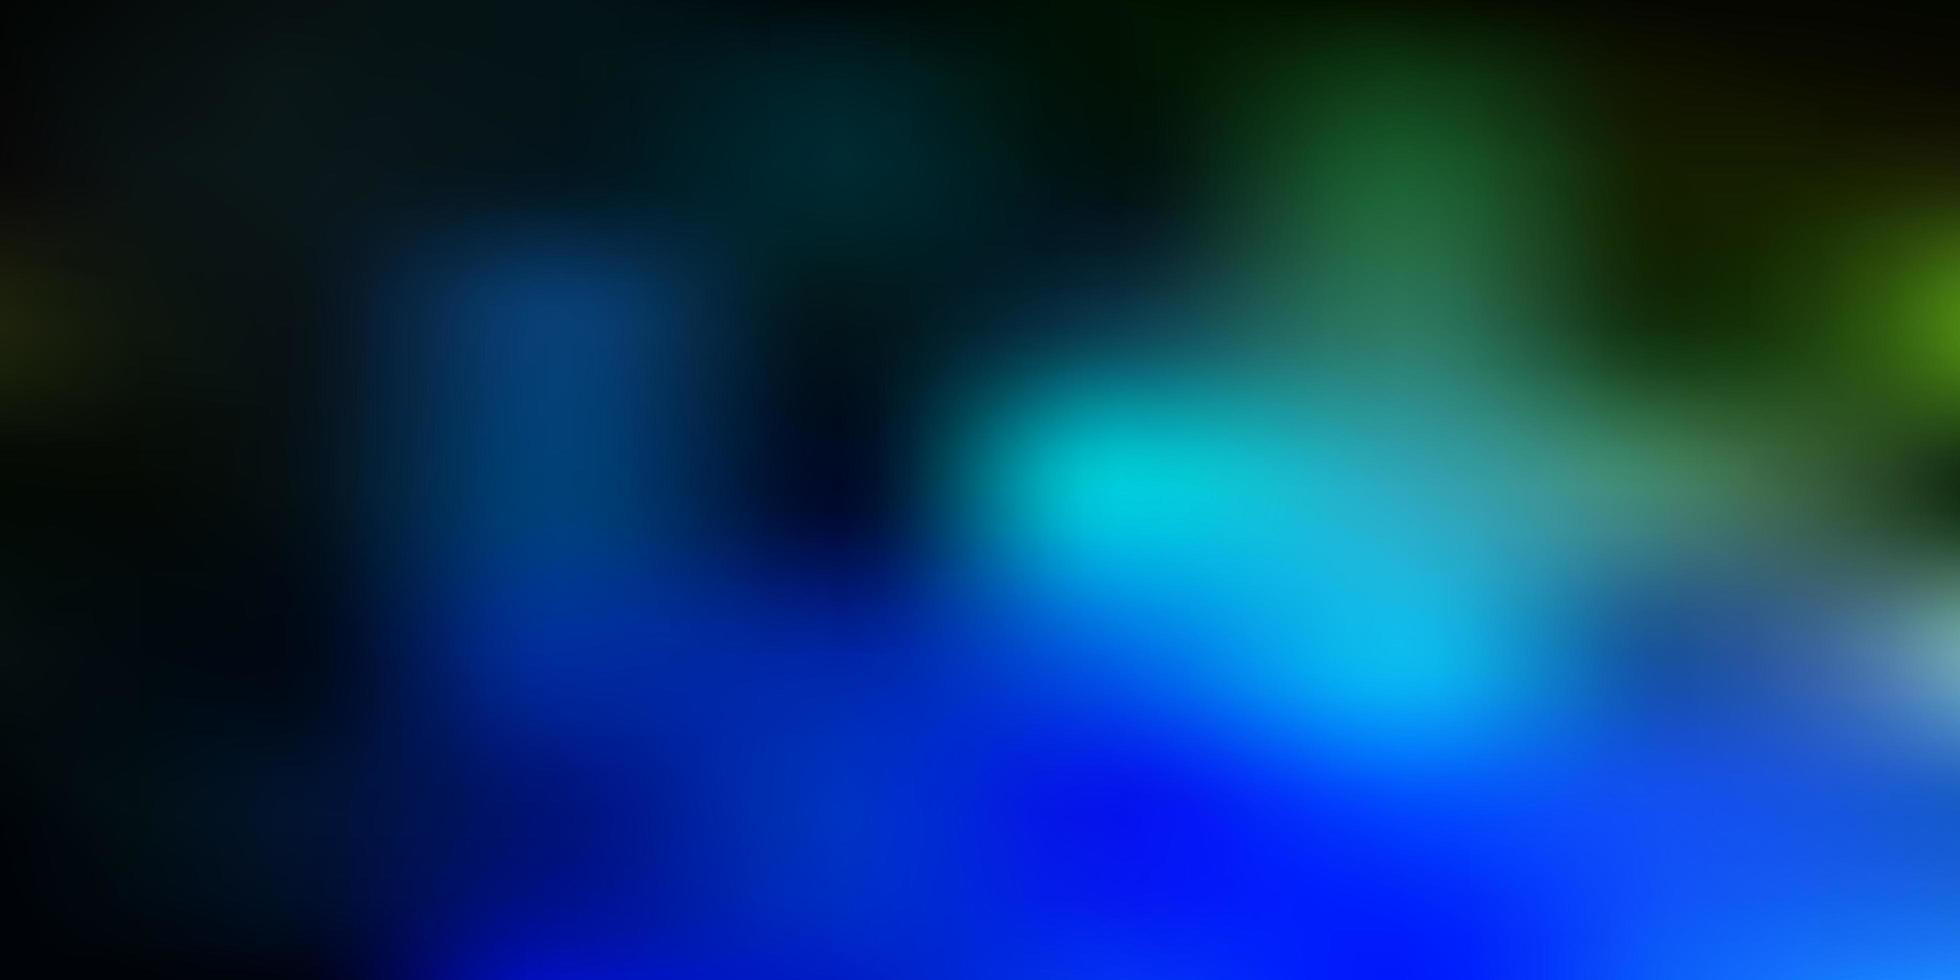 mörkblå, grön vektor gradient oskärpa layout.